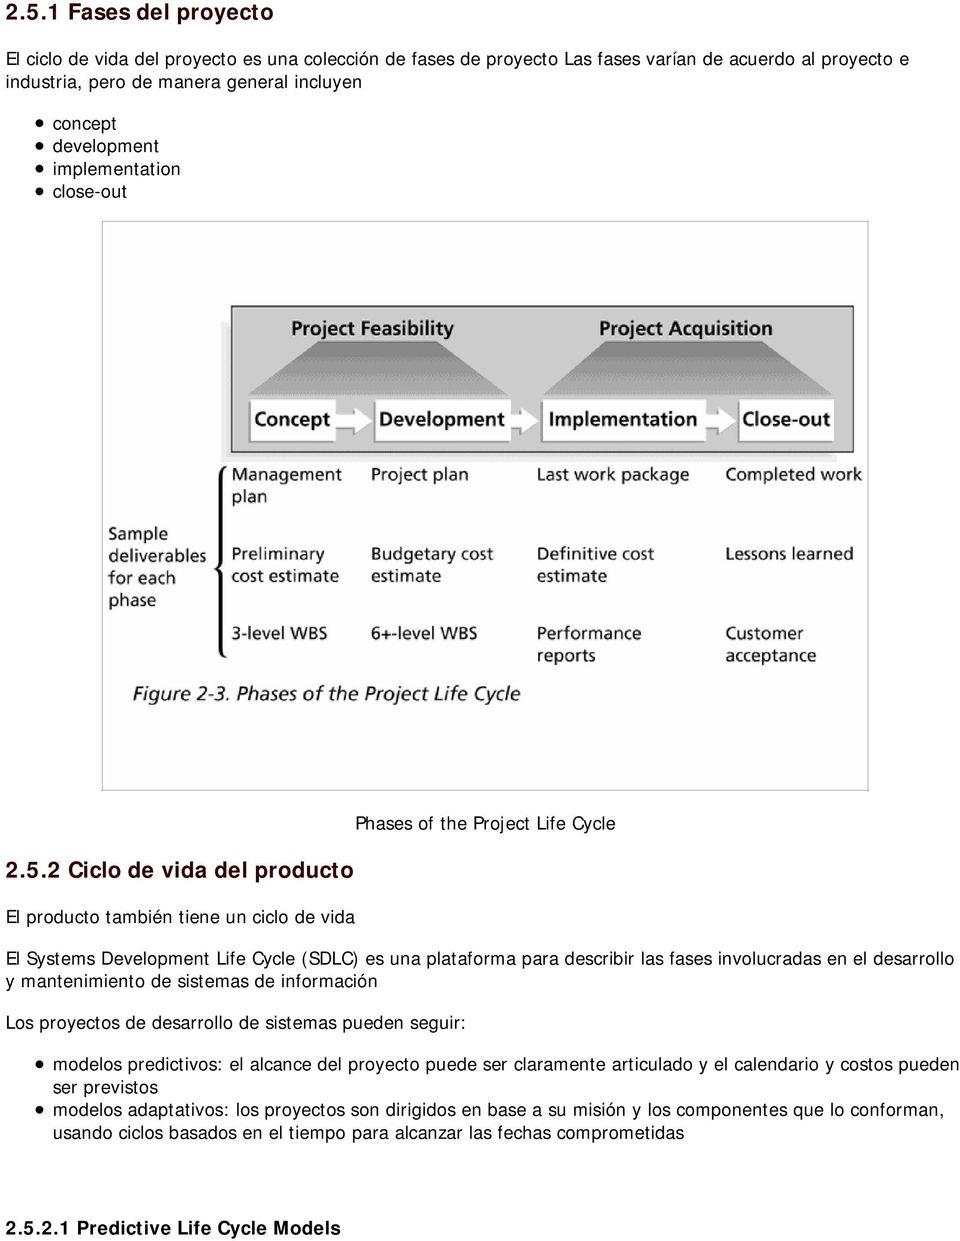 2 Ciclo de vida del producto El producto también tiene un ciclo de vida Phases of the Project Life Cycle El Systems Development Life Cycle (SDLC) es una plataforma para describir las fases